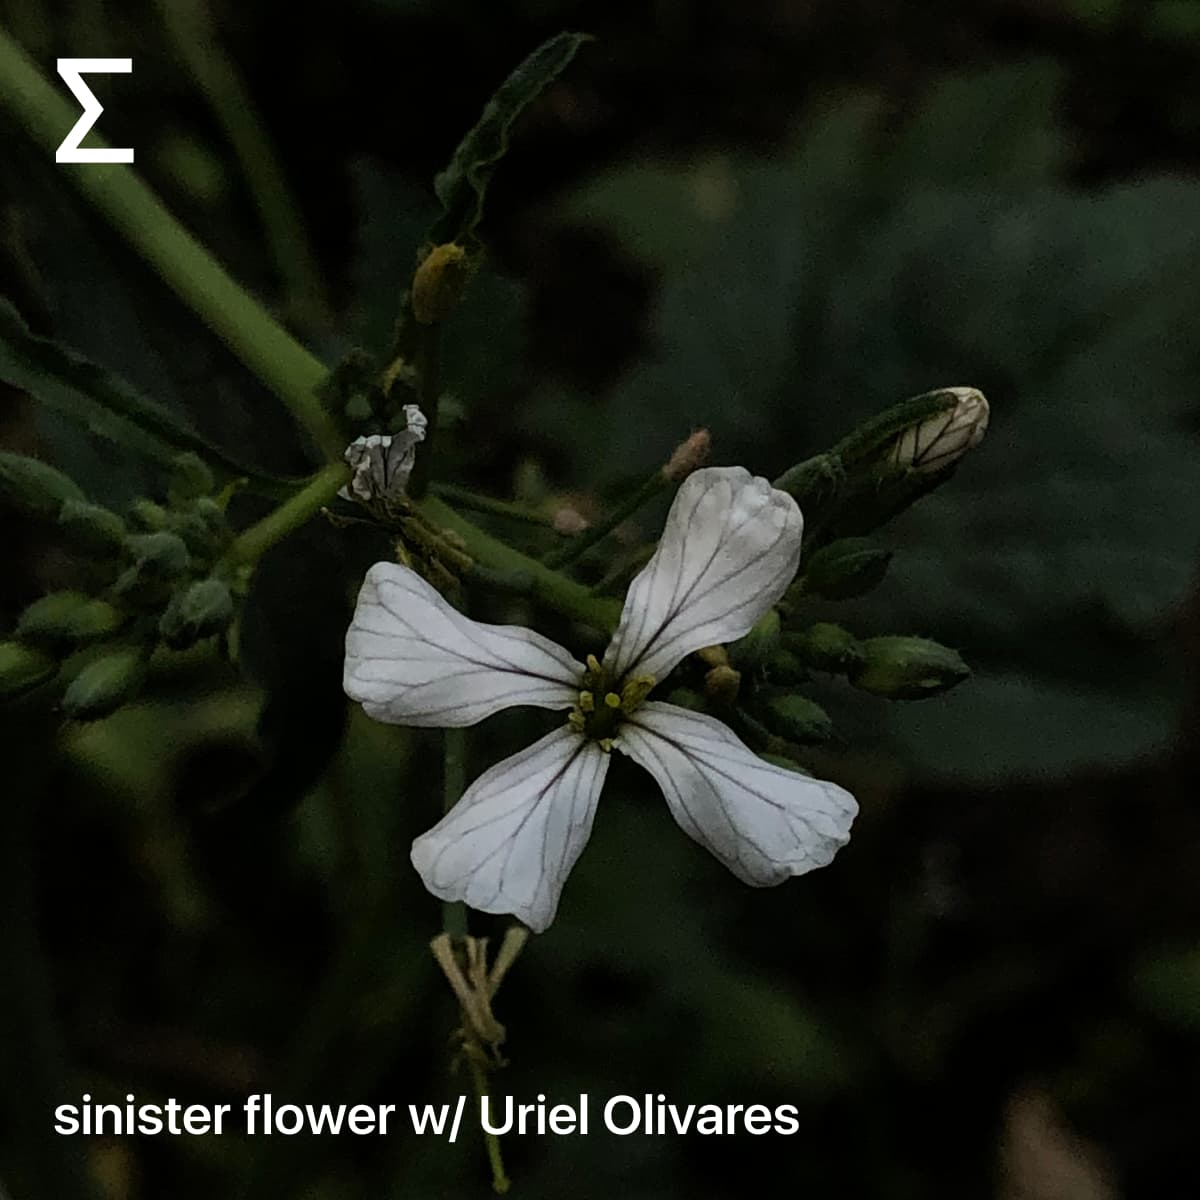 sinister flower w/ Uriel Olivares